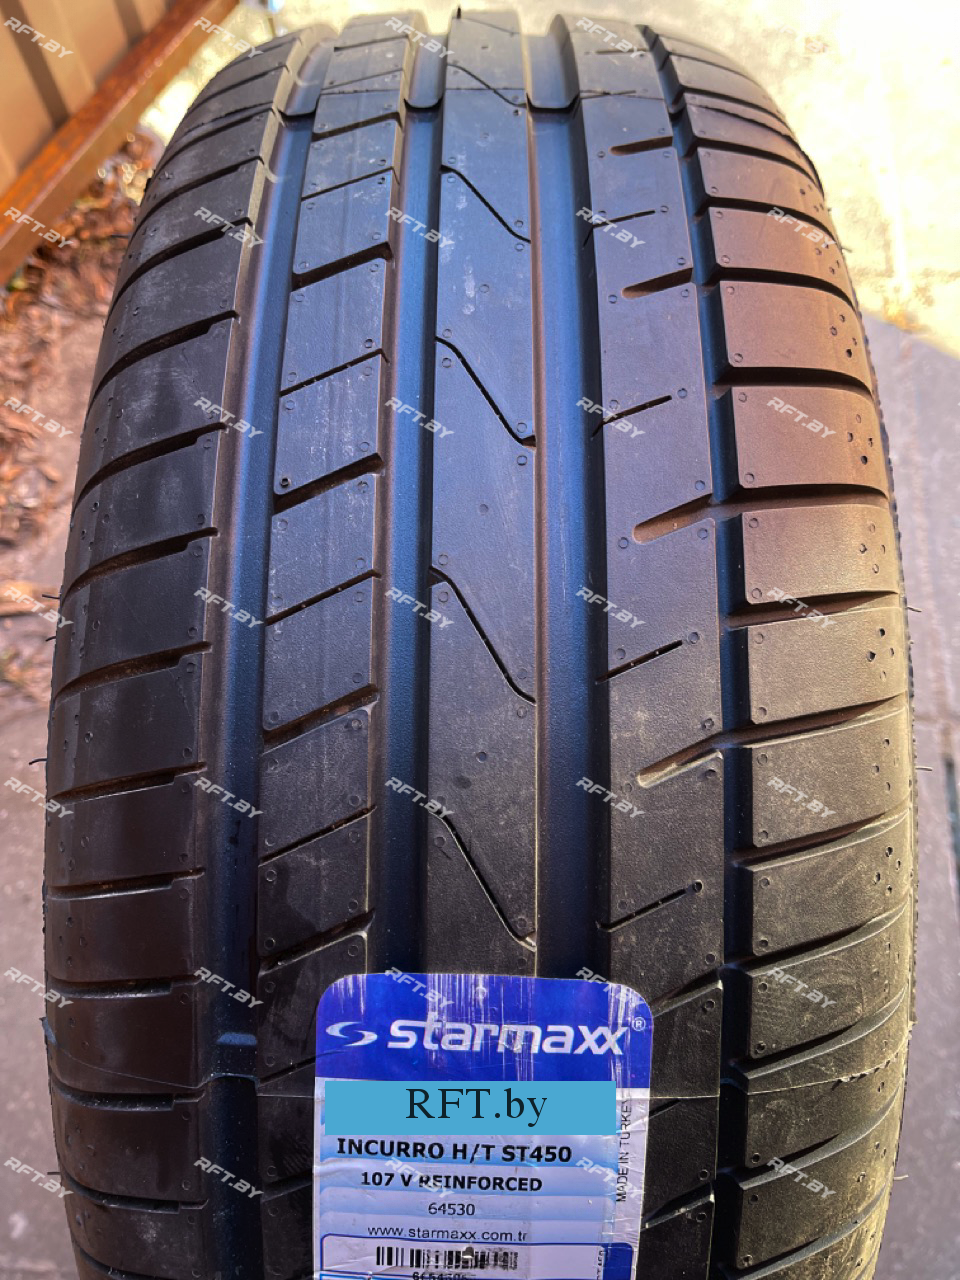 Starmaxx Incurro H/T ST450 215/55 R18 95H